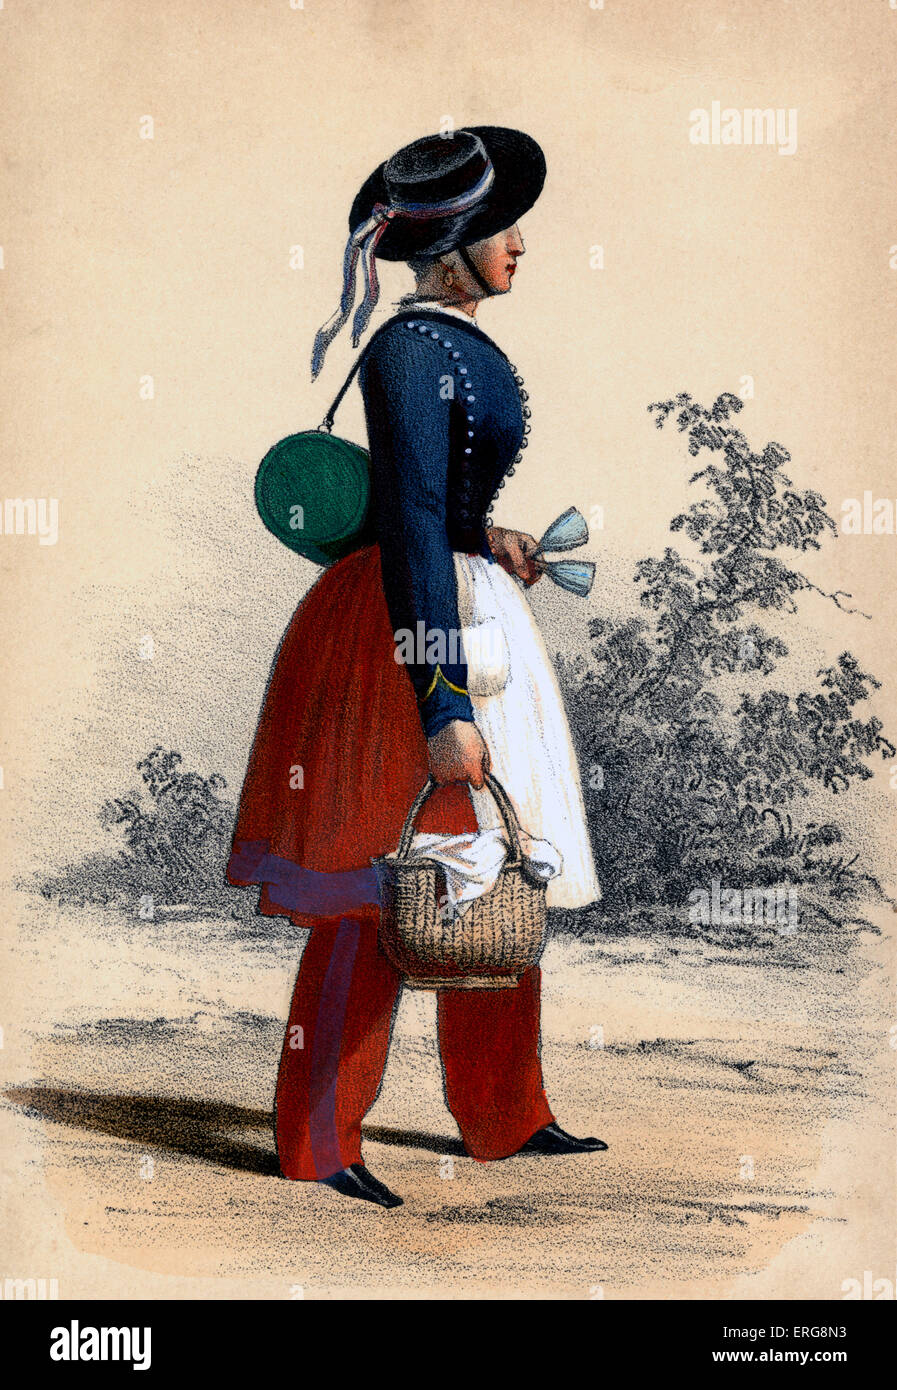 Cantinière: XIX secolo francese attaccata al militare reggimenti, la vendita di vino per le truppe e lavorando in mense (anche Foto Stock